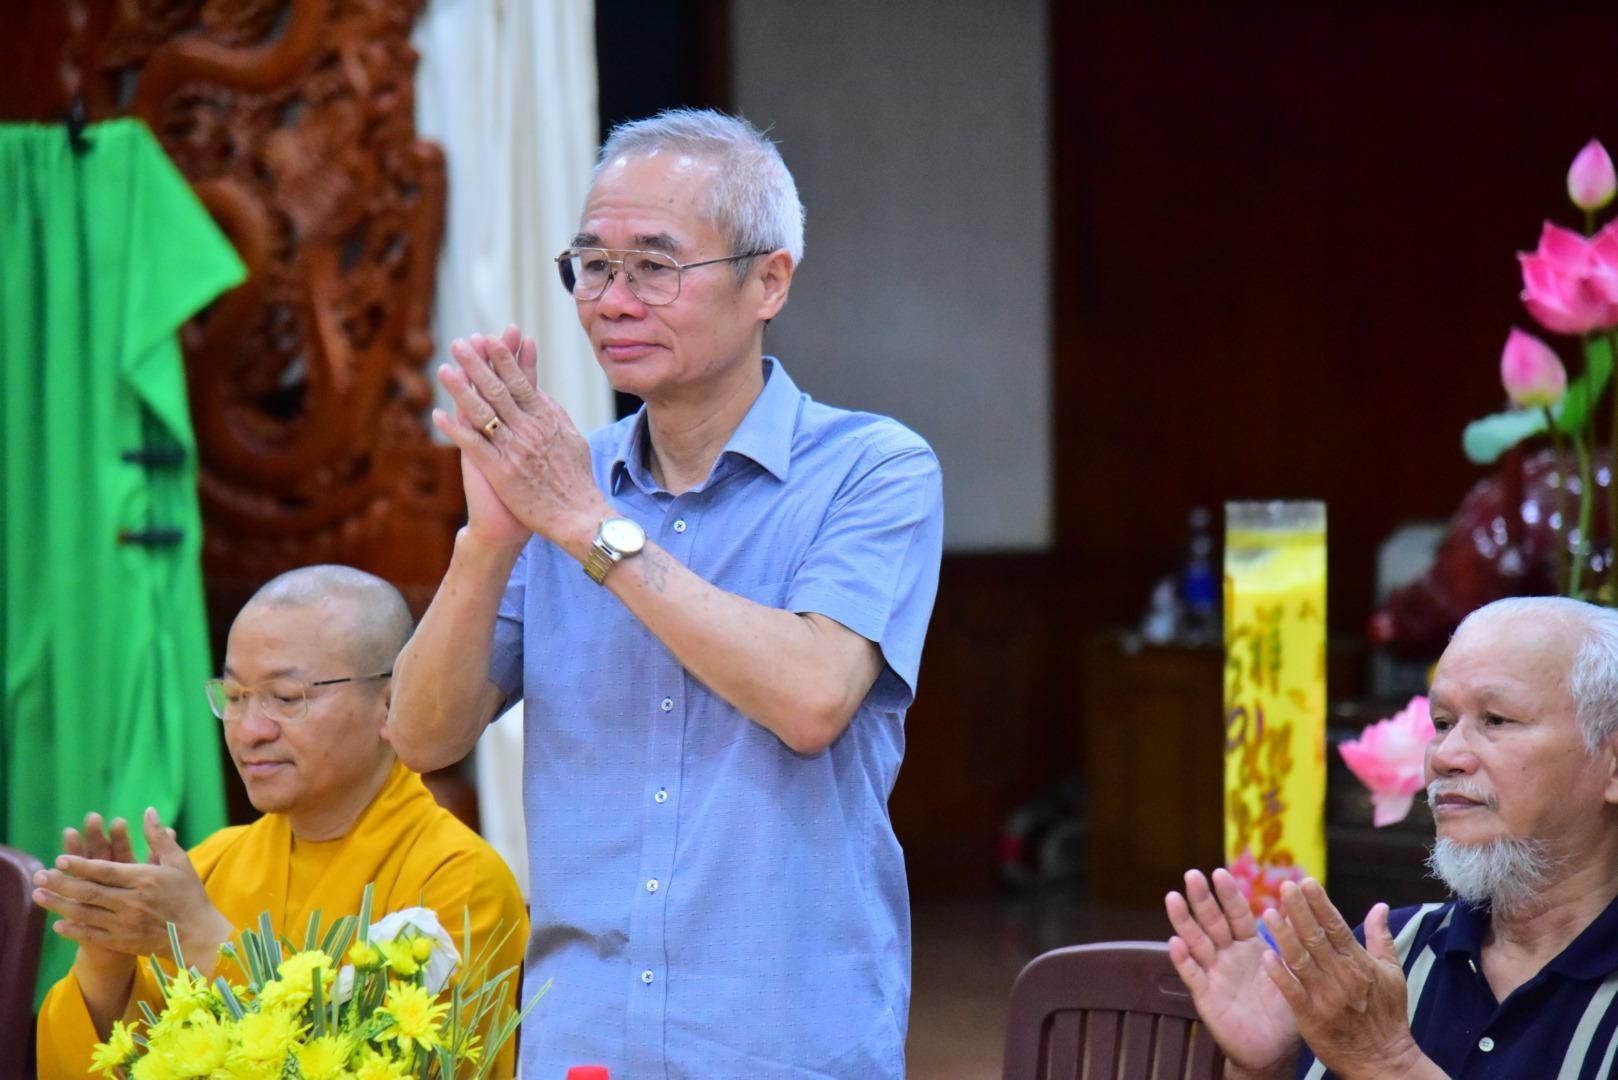 Viện Nghiên cứu Phật học Việt Nam thỏa thuận hợp tác với Hiệp hội sao chép bản quyền Việt Nam